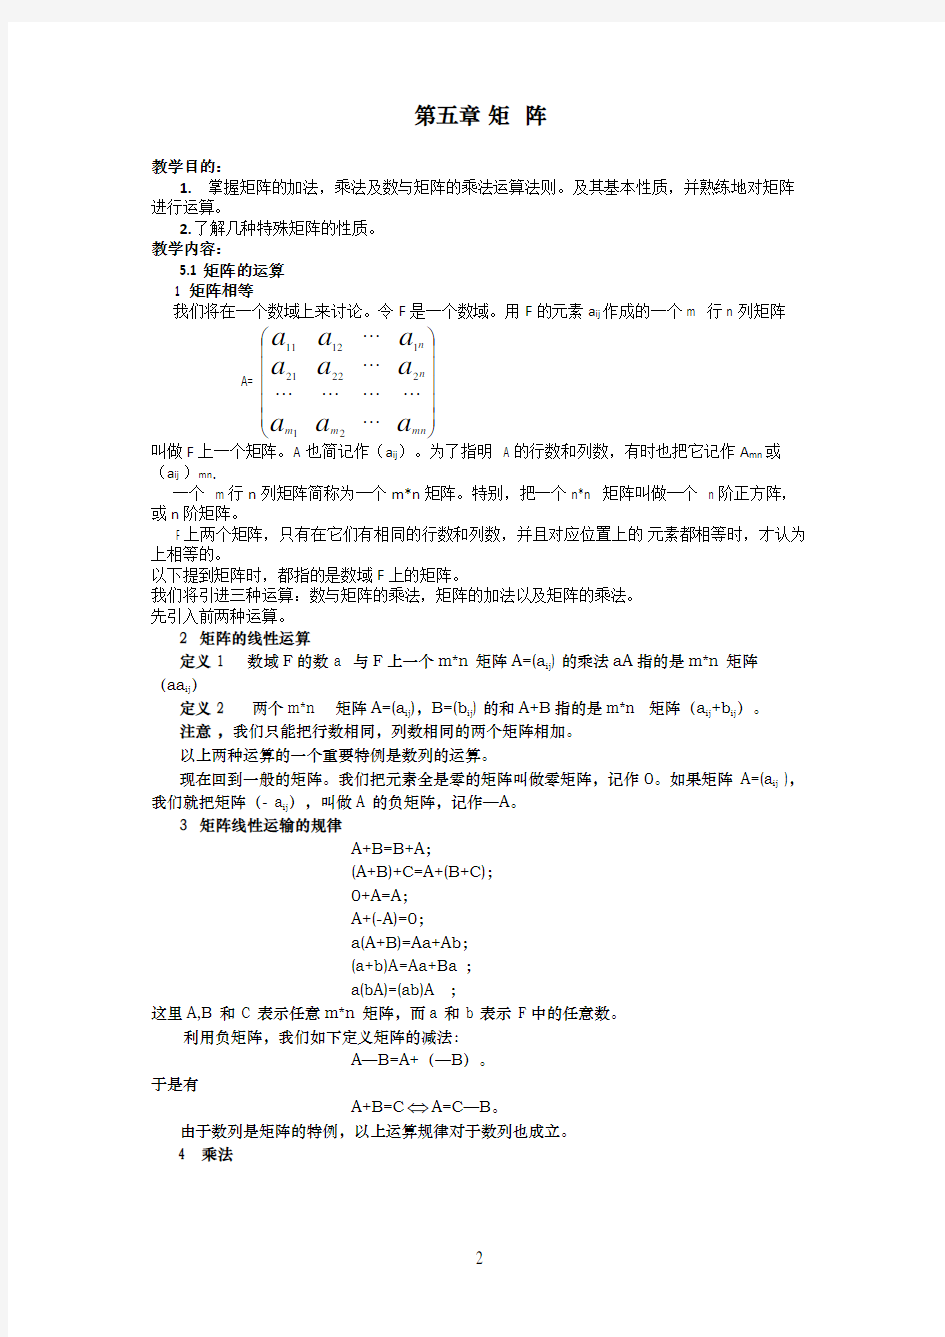 高等代数(张禾瑞版)教案-第5章矩阵